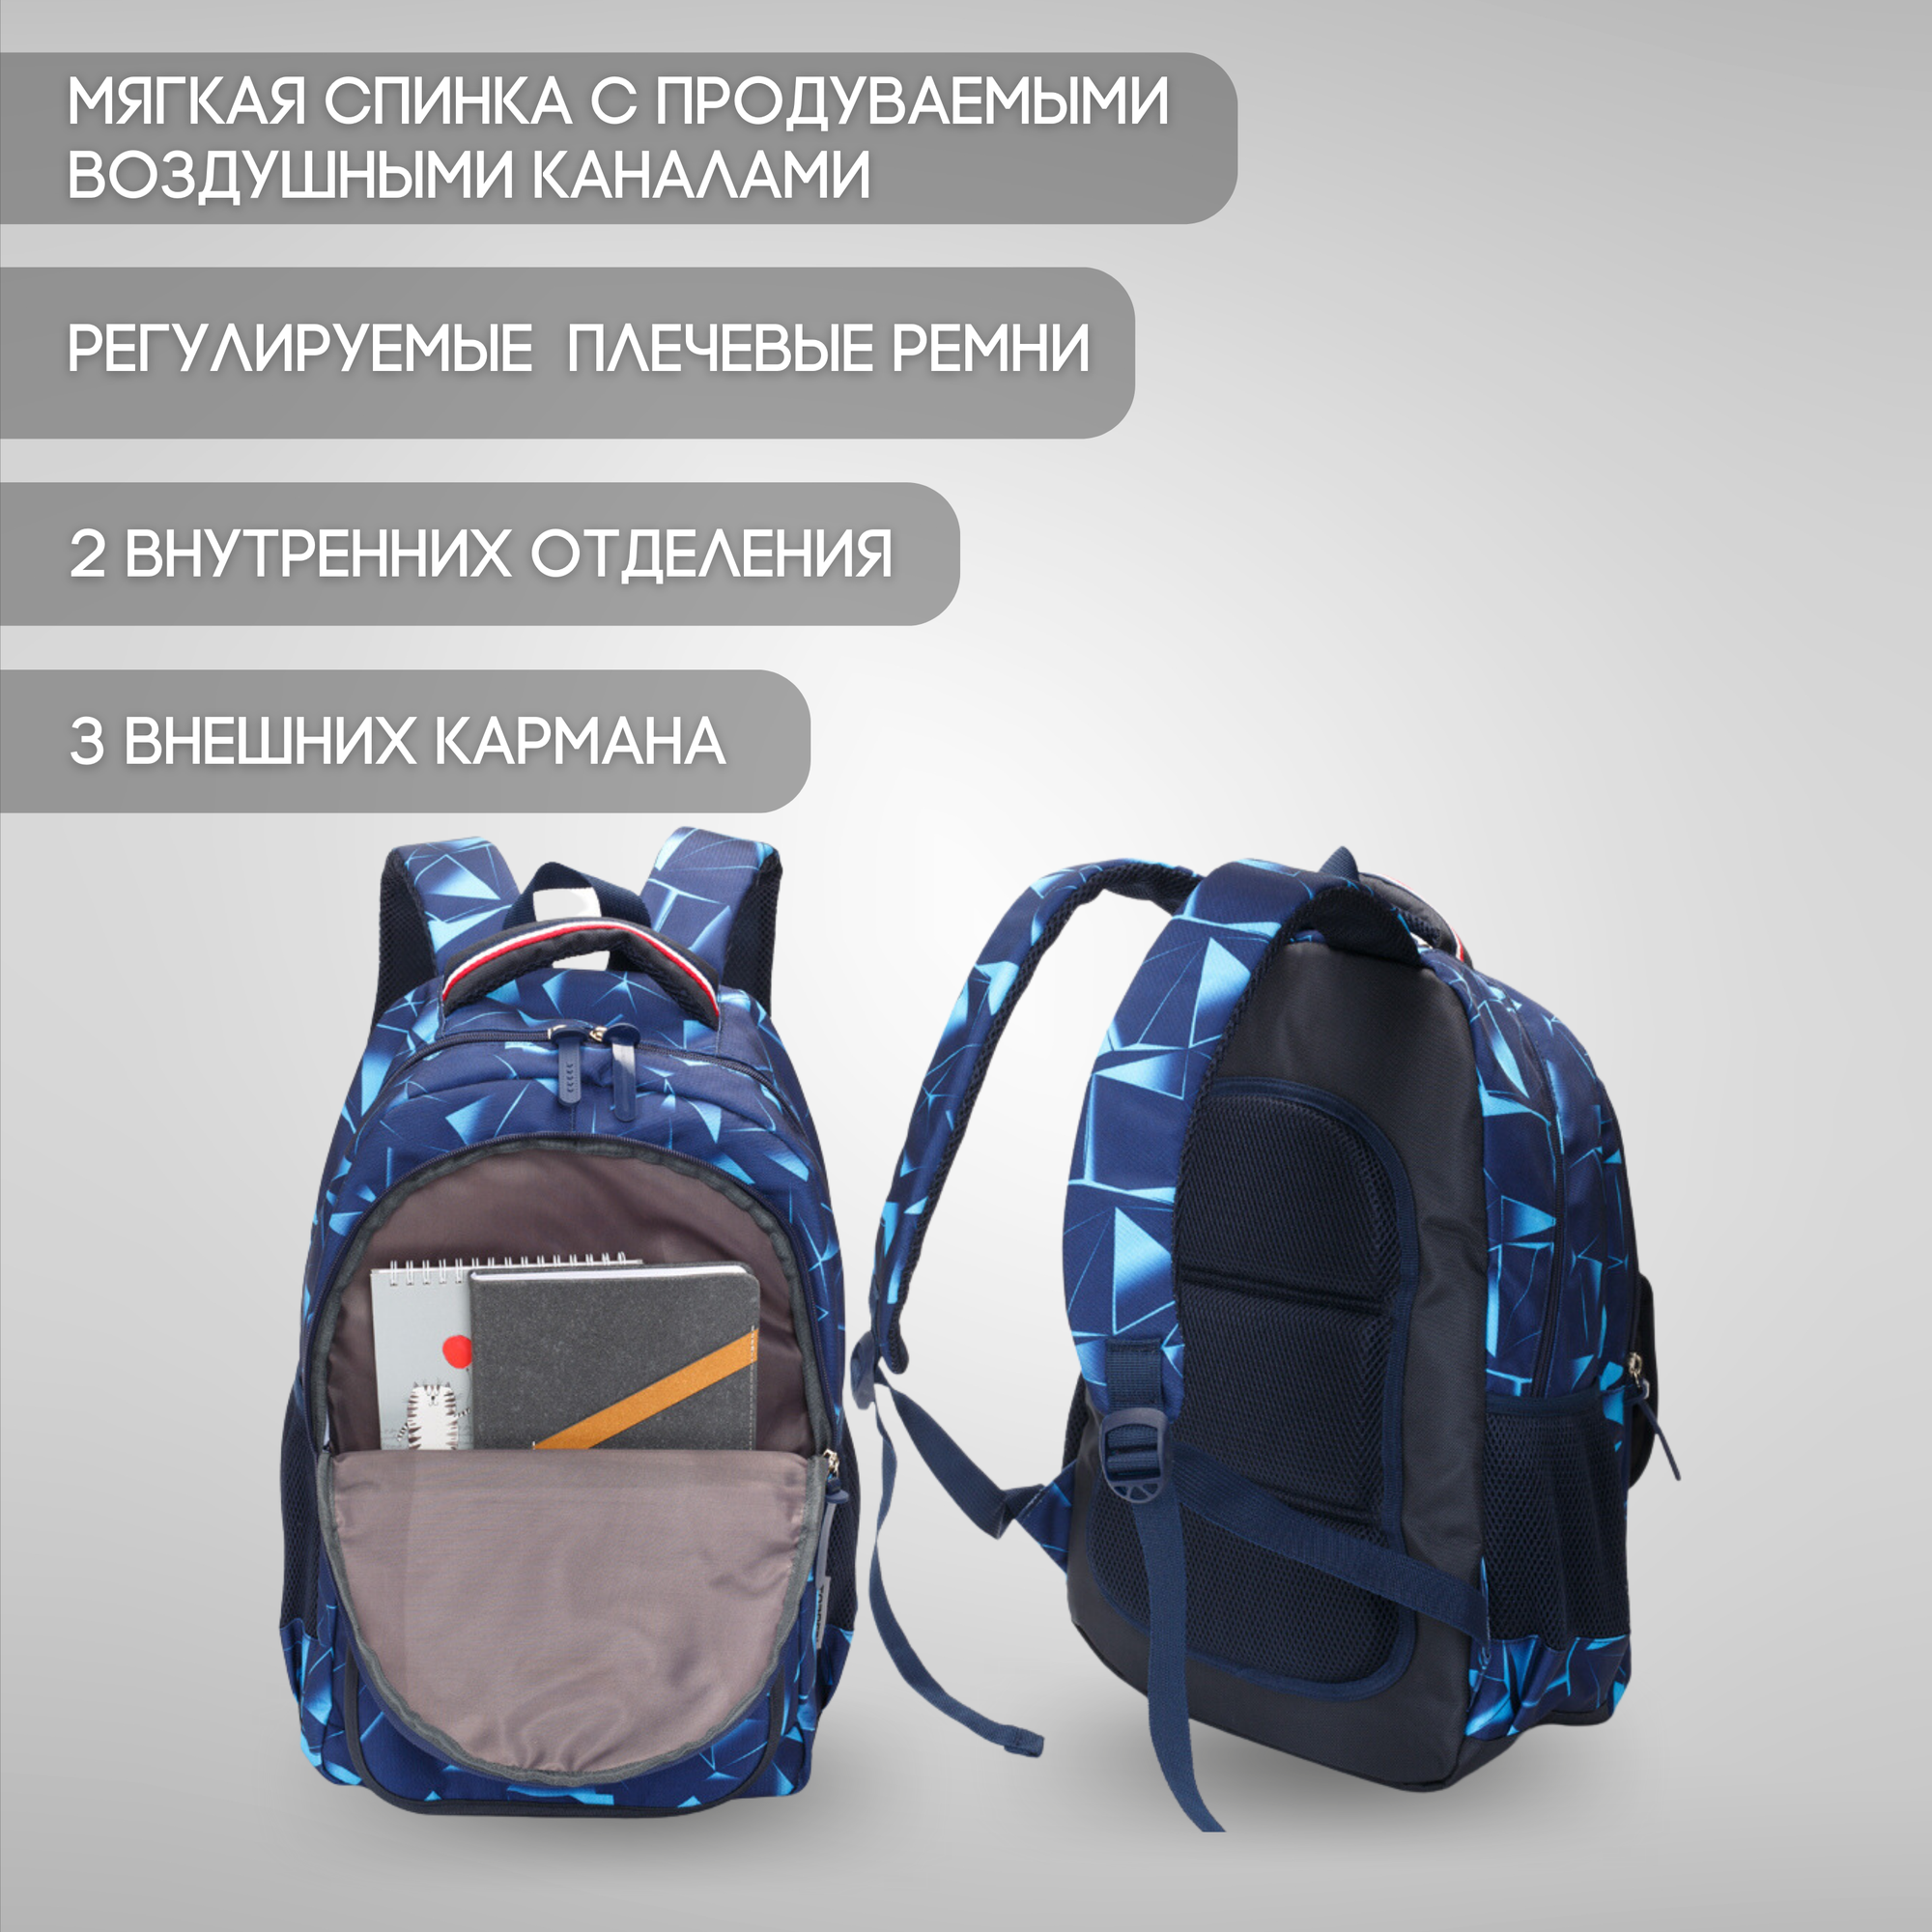 Школьные рюкзаки и ранцы Cool for School Школьный рюкзак для мальчика, девочки TORBER CLASS X, темно-синий с орнаментом, полиэстер, 45х30х18 см, 17 л (T2743-NAV-BLU)